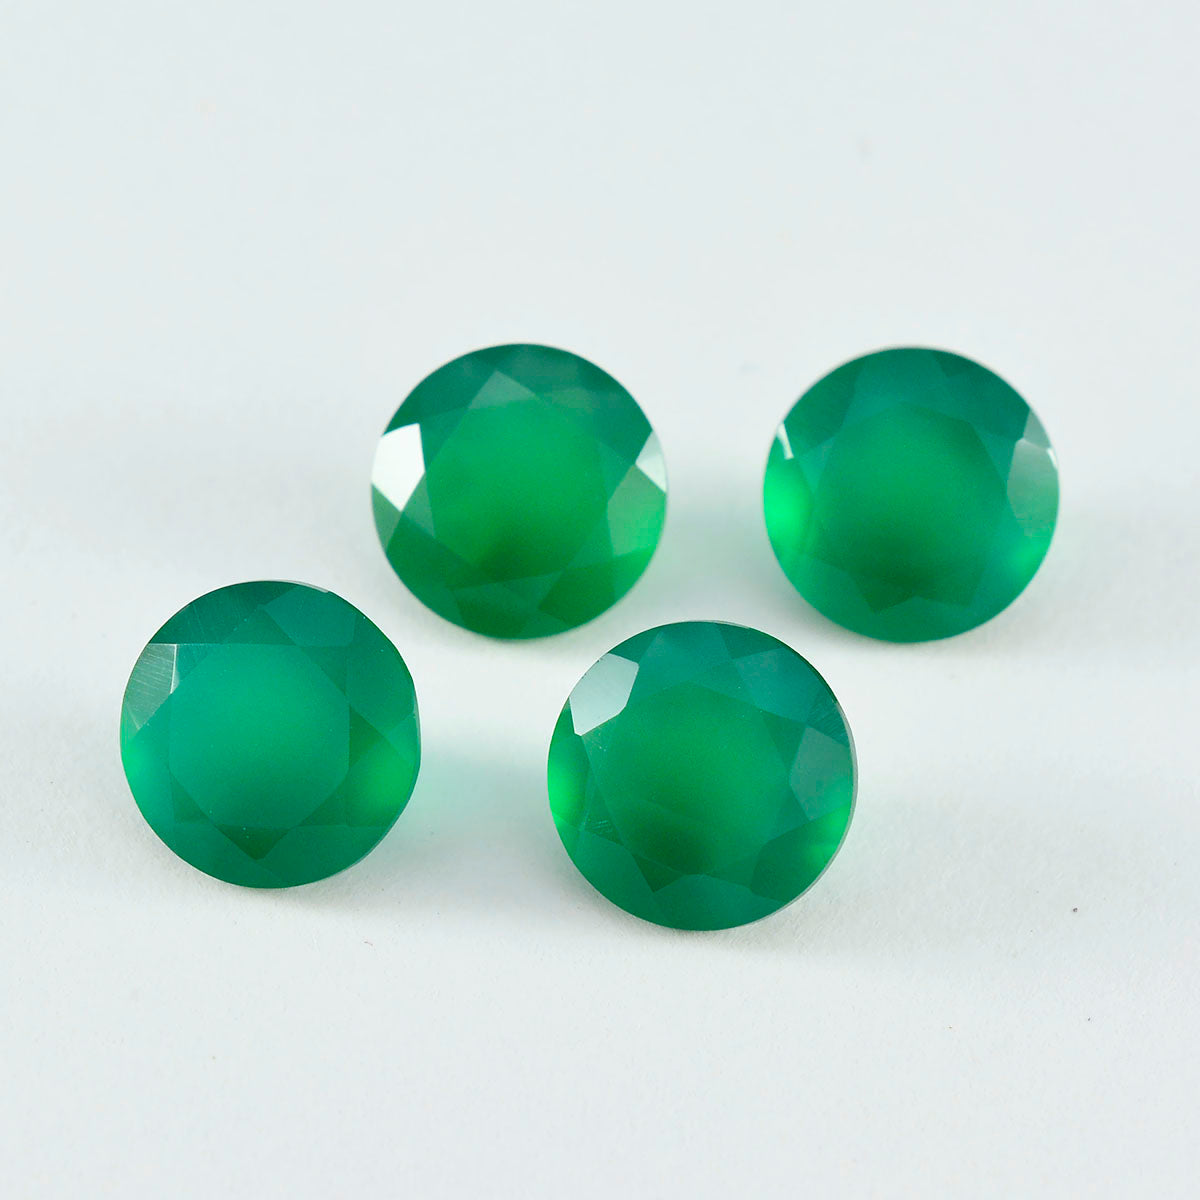 riyogems 1 шт. натуральный зеленый оникс ограненный 7x7 мм круглый камень хорошего качества